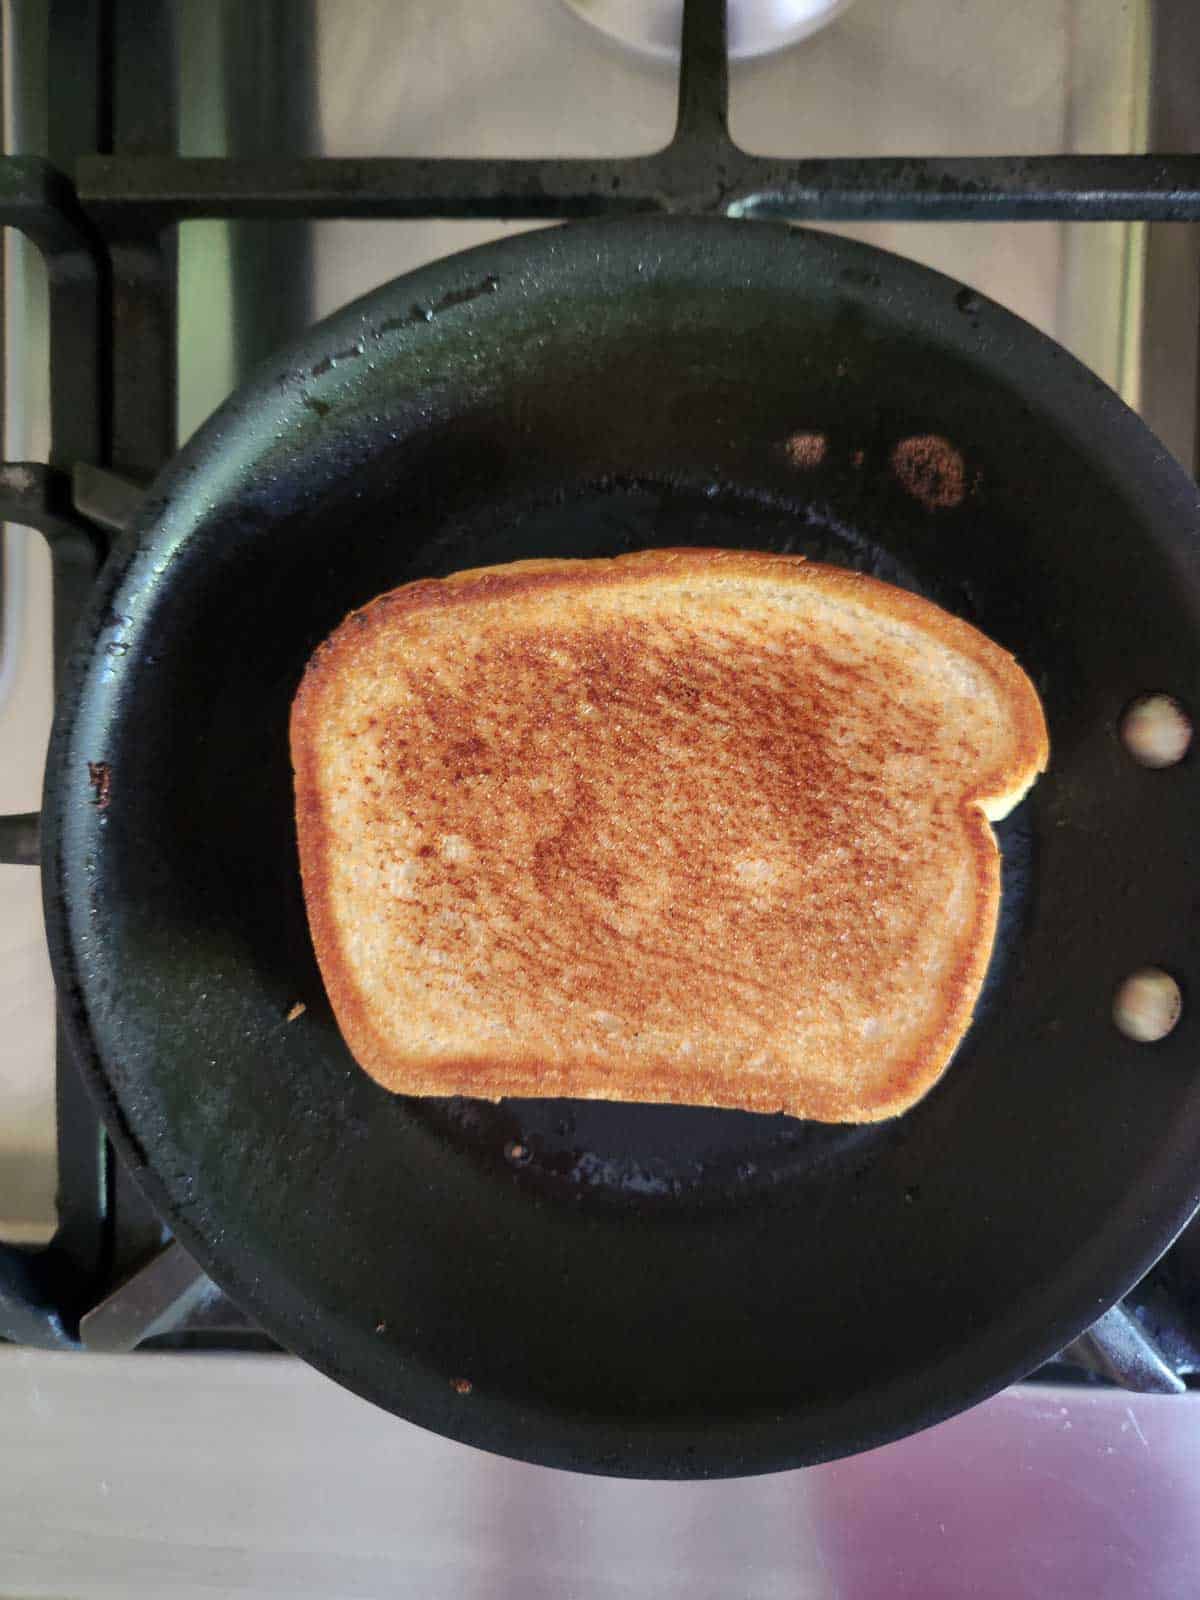 Fried sandwich in a pan.